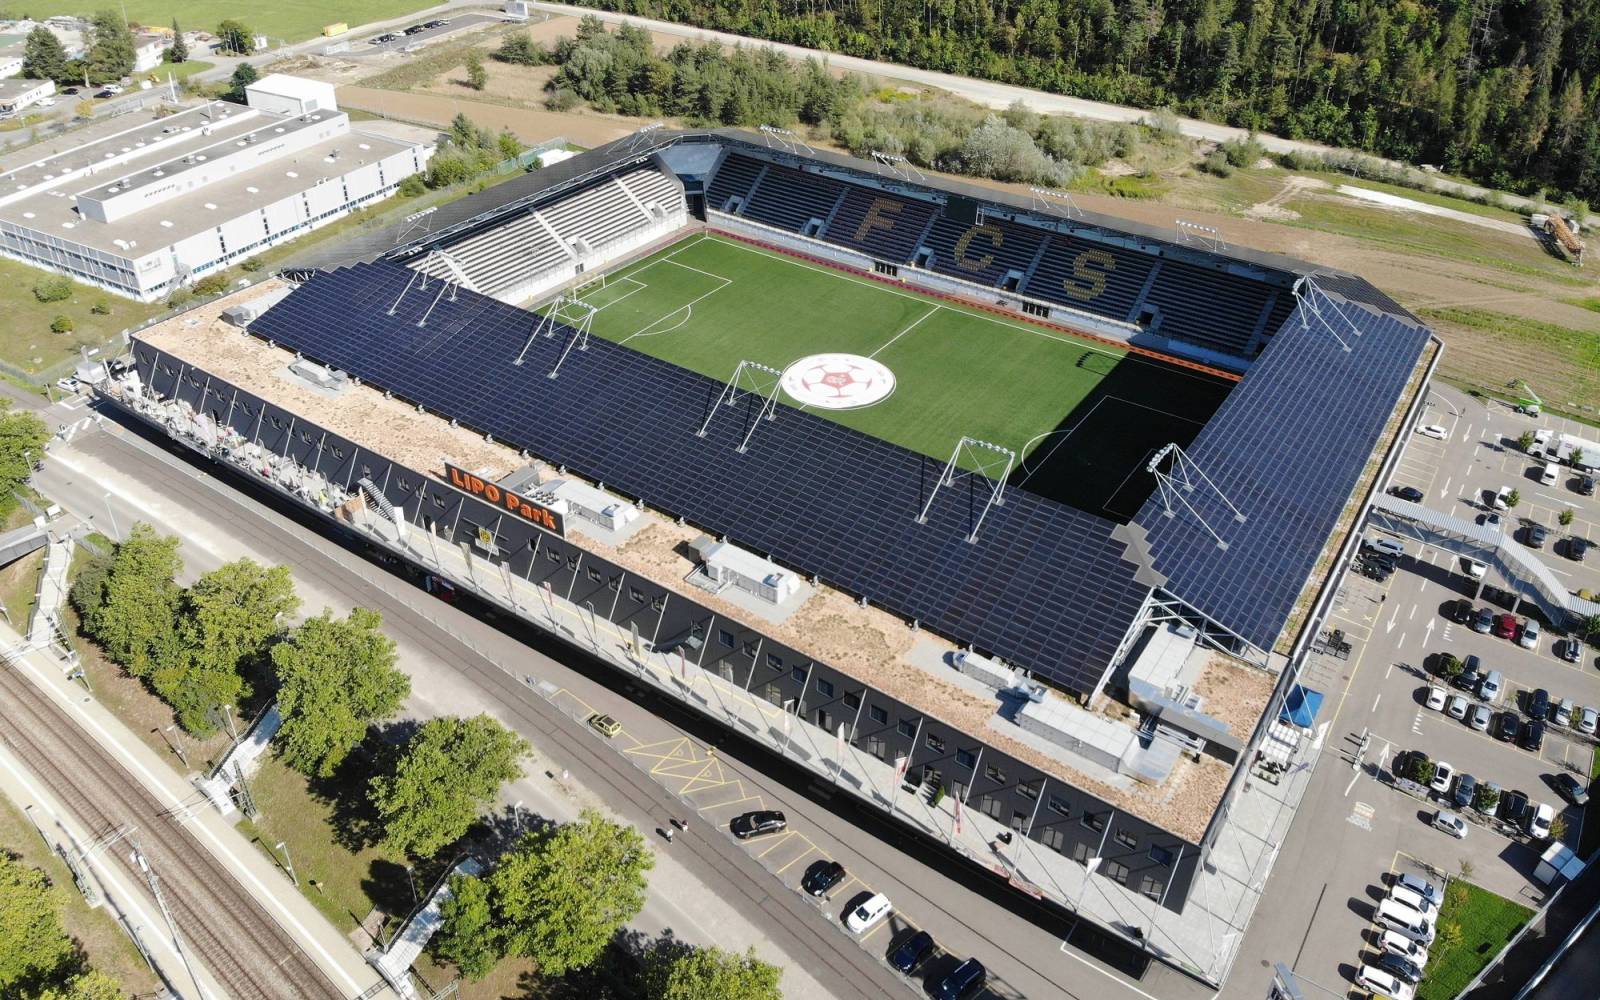 Fussbalstadion mit Solaranlagen auf dem Dach